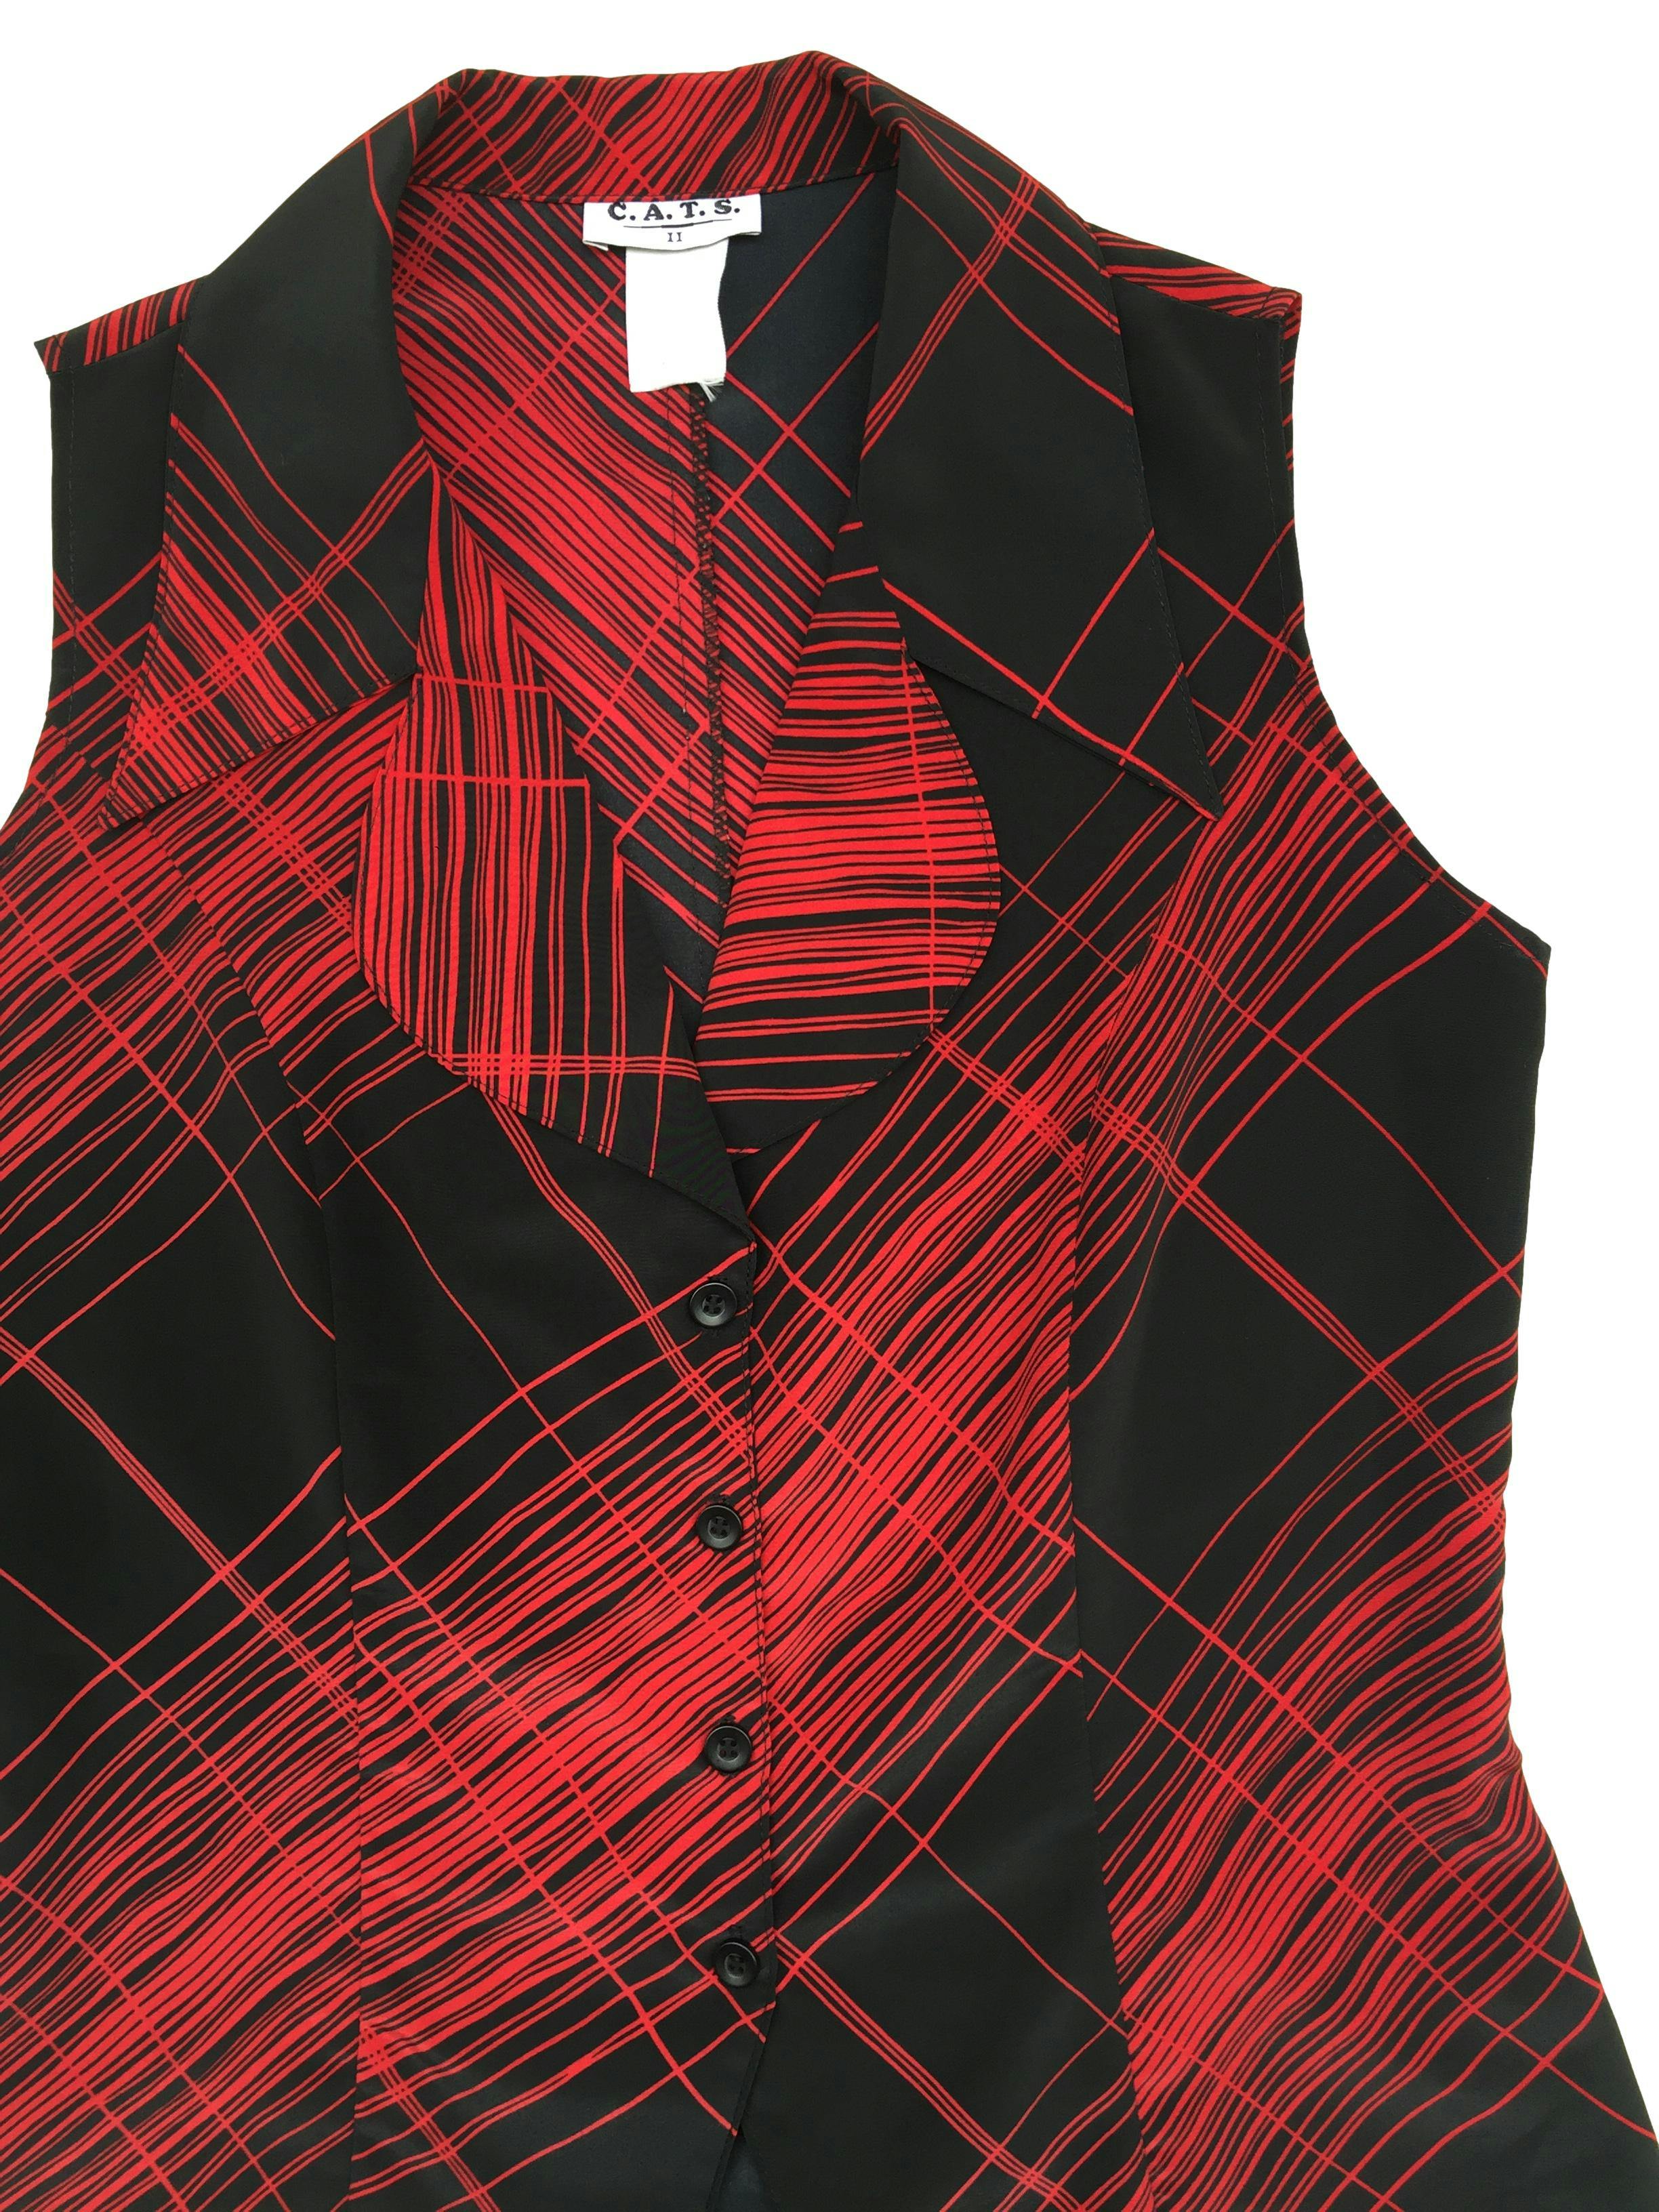 Blusa de fondo negro con rayas rojas, cuello camisero acabado en punta, botones delanteros. Busto 100cm, Largo 61cm. 